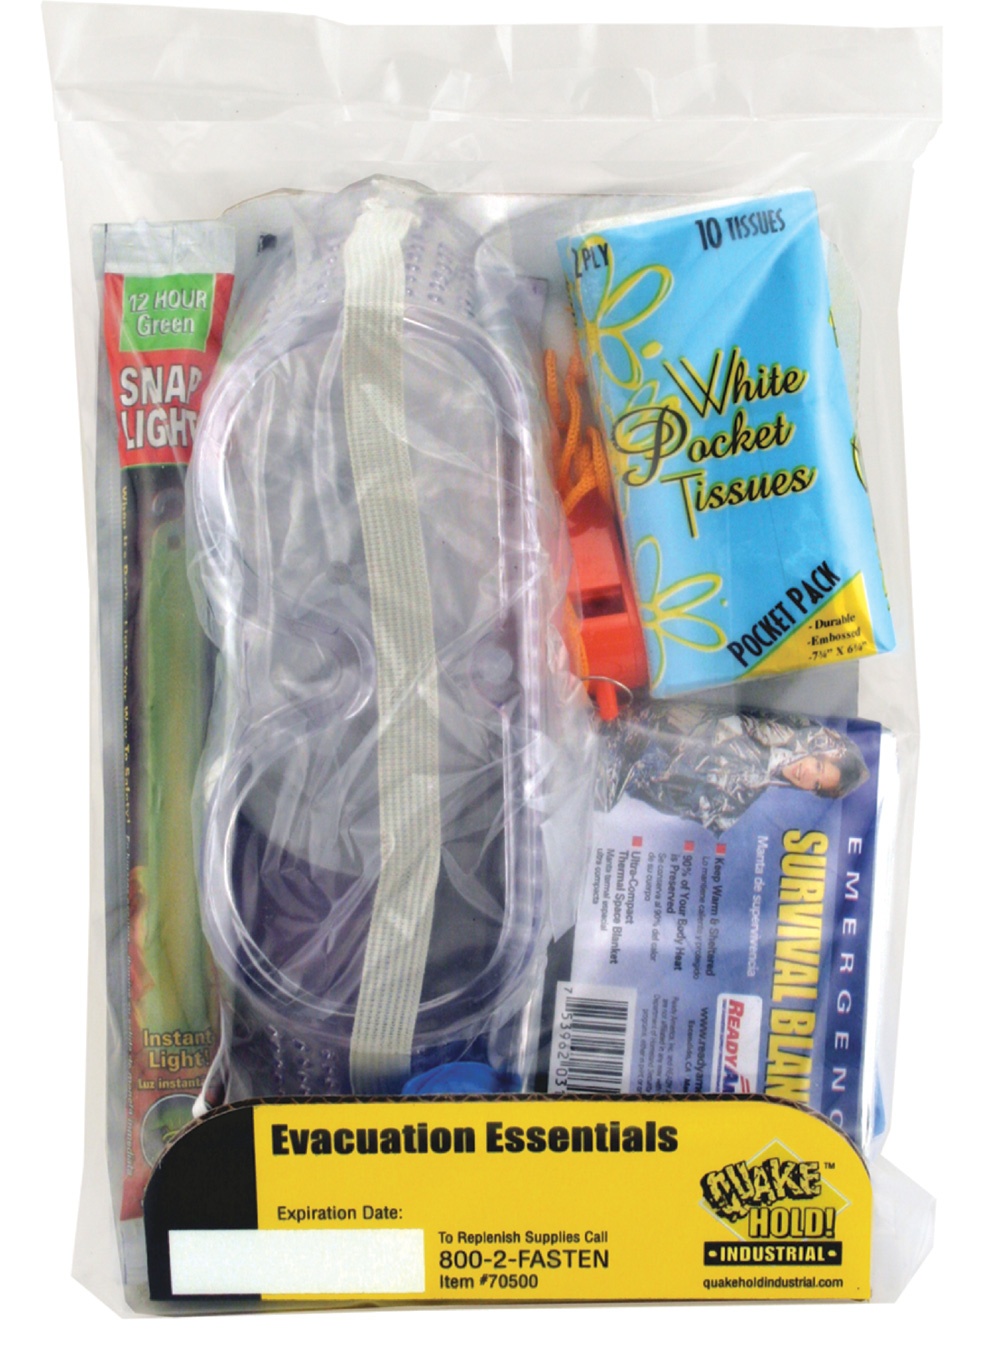 Evacuation Essentials